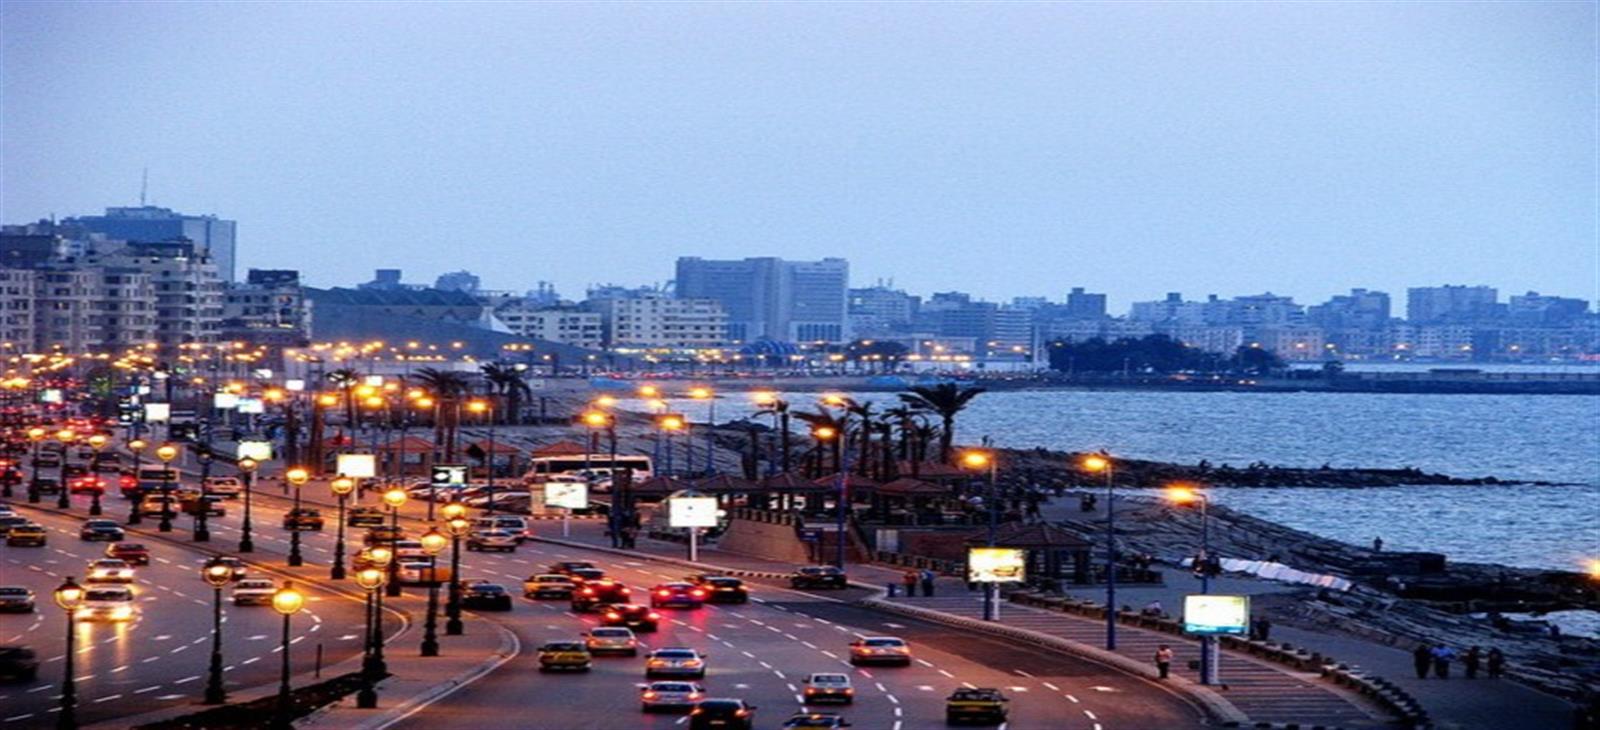 City Of Alexandria